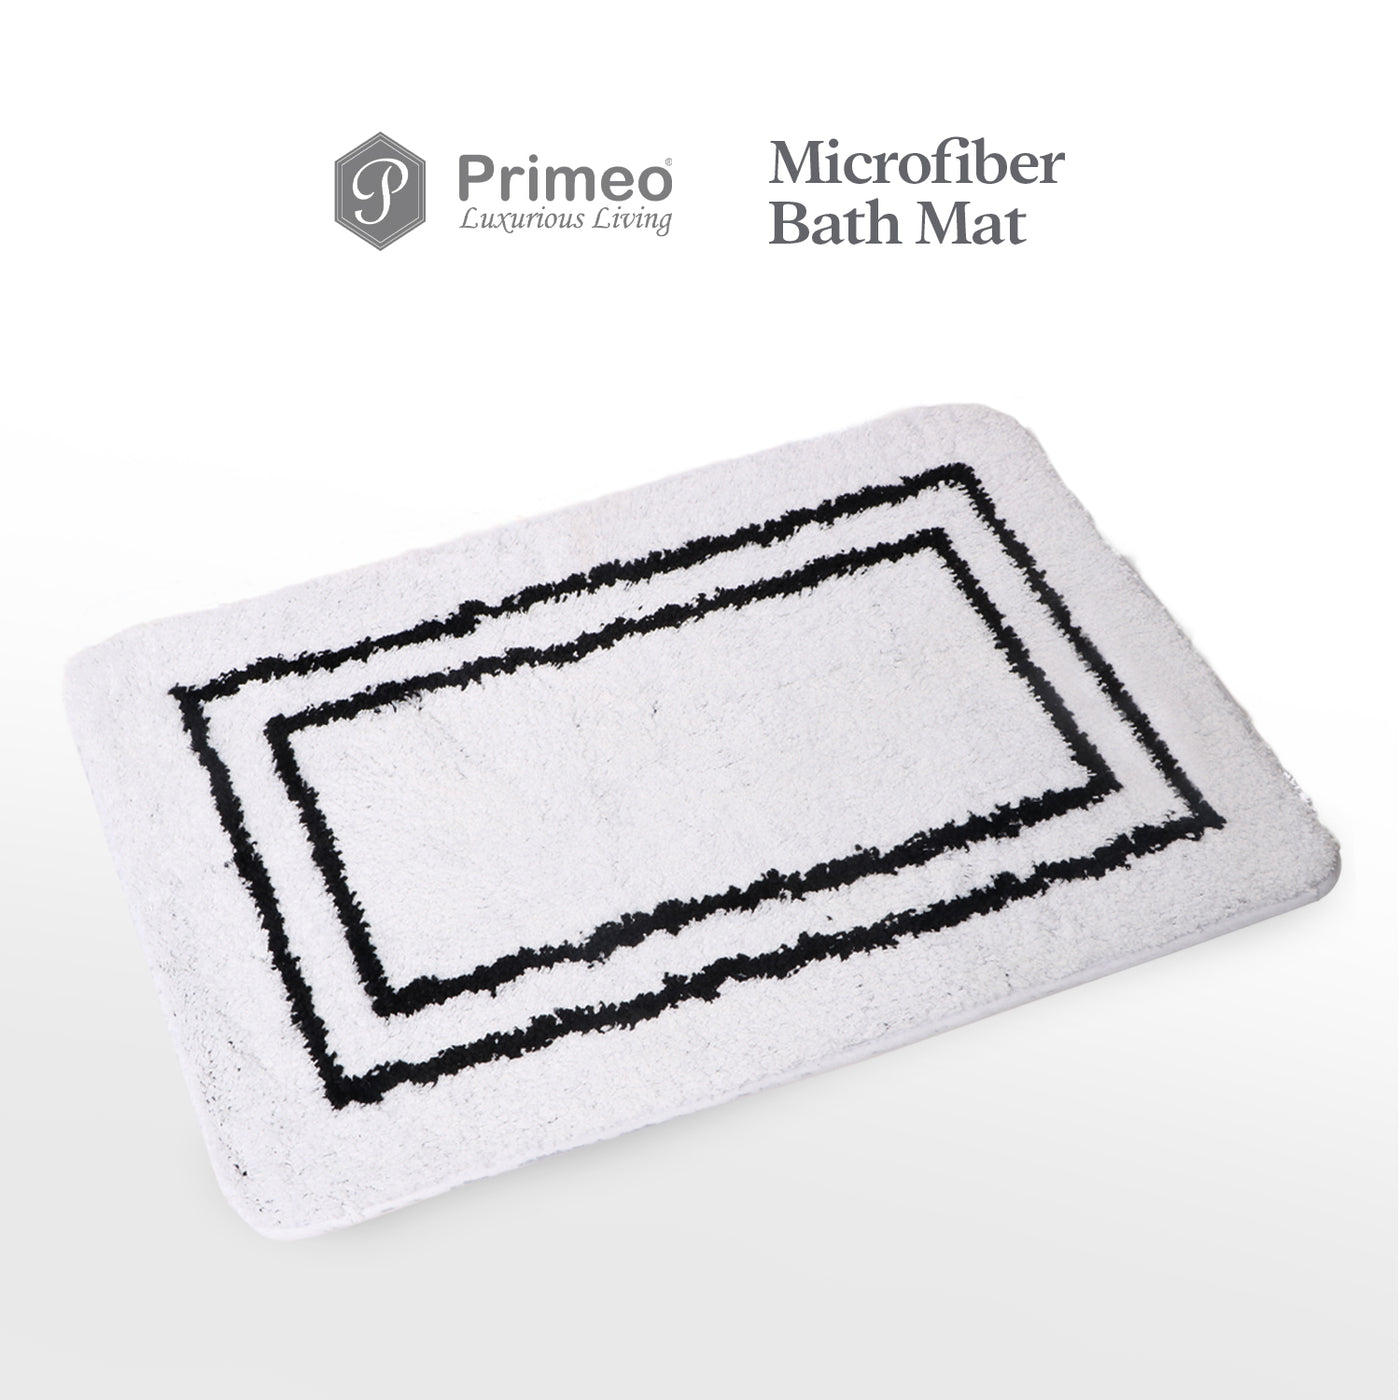 PRIMEO Premium Microfiber Bathroom Mat